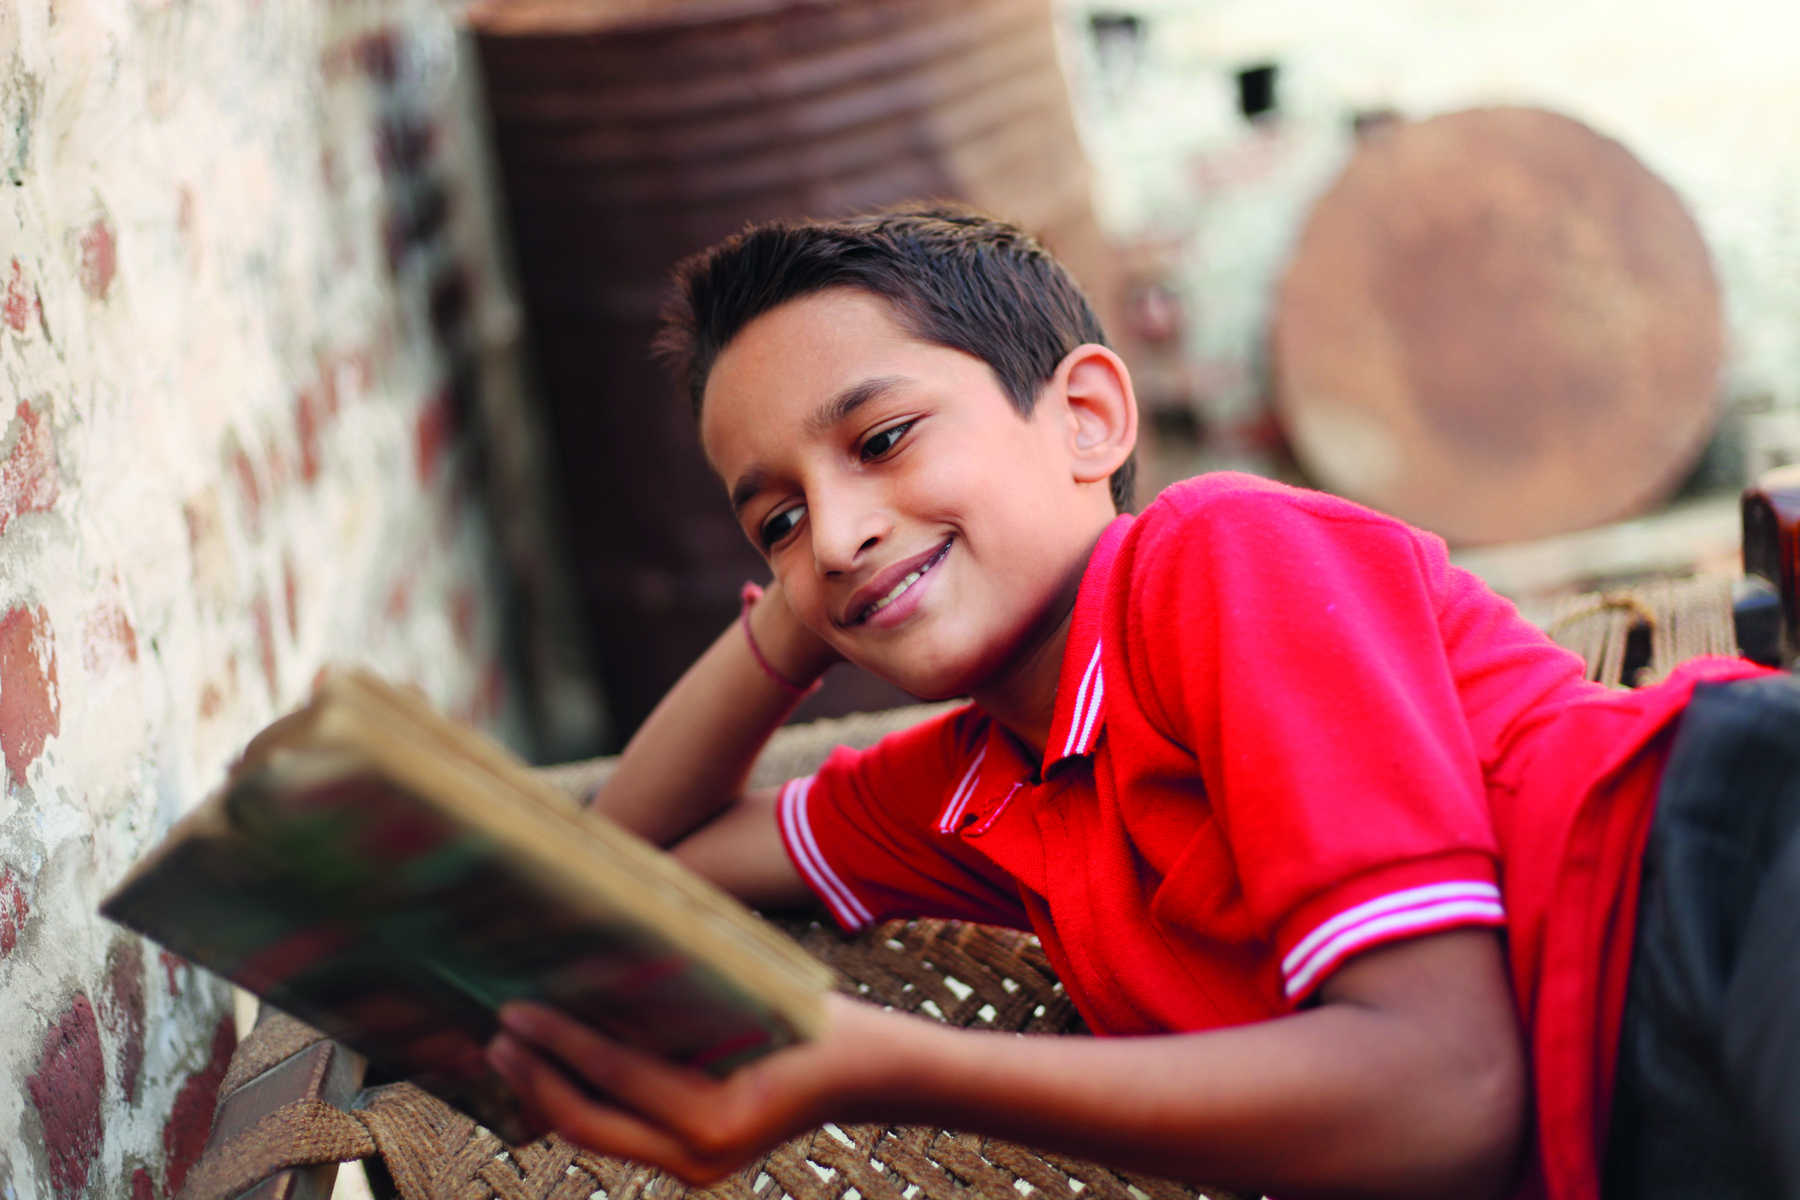 Fotografia. Um menino de cabelo castanho curto usando uma camisa polo vermelha. Ele está deitado de barriga para baixo, com a cabeça apoiada na mão direita, olhando para um livro aberto e sorrindo.